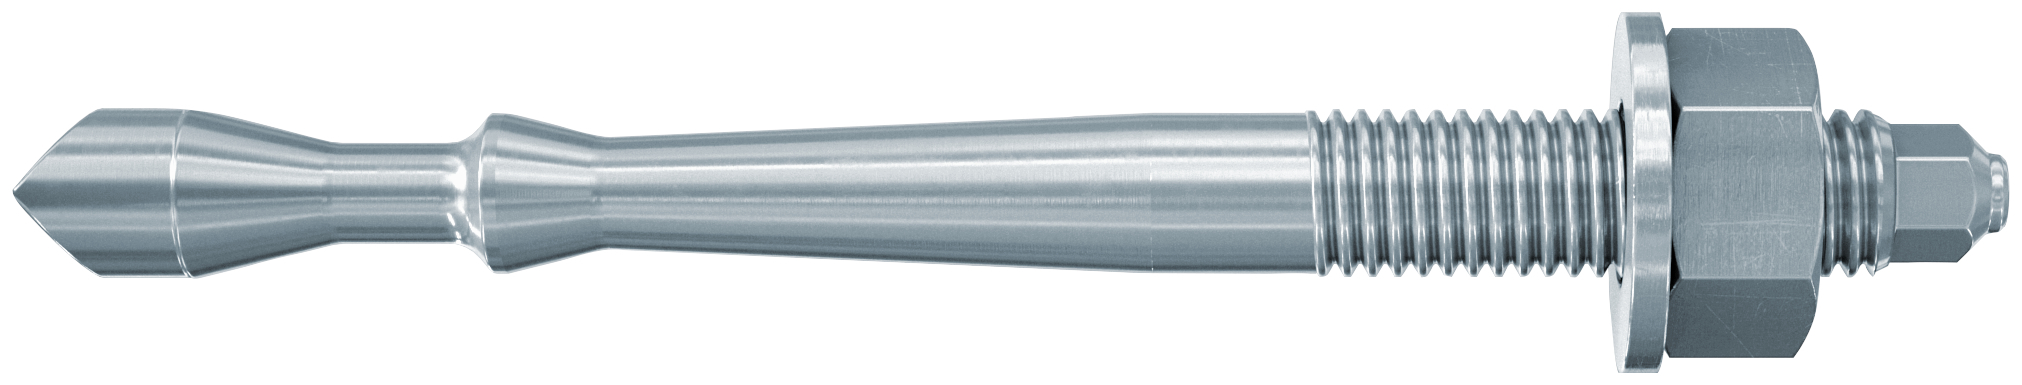 fischer Barra multicono in acciaio FHB II-A S M24x170-50 per ancorante chimico FIS HB (1 Pz.) Barra multicono corta in acciaio zincato classe 8.8. Massime prestazioni a trazione in calcestruzzo fessurato e a ridotte distanze dai bordi. fie1184